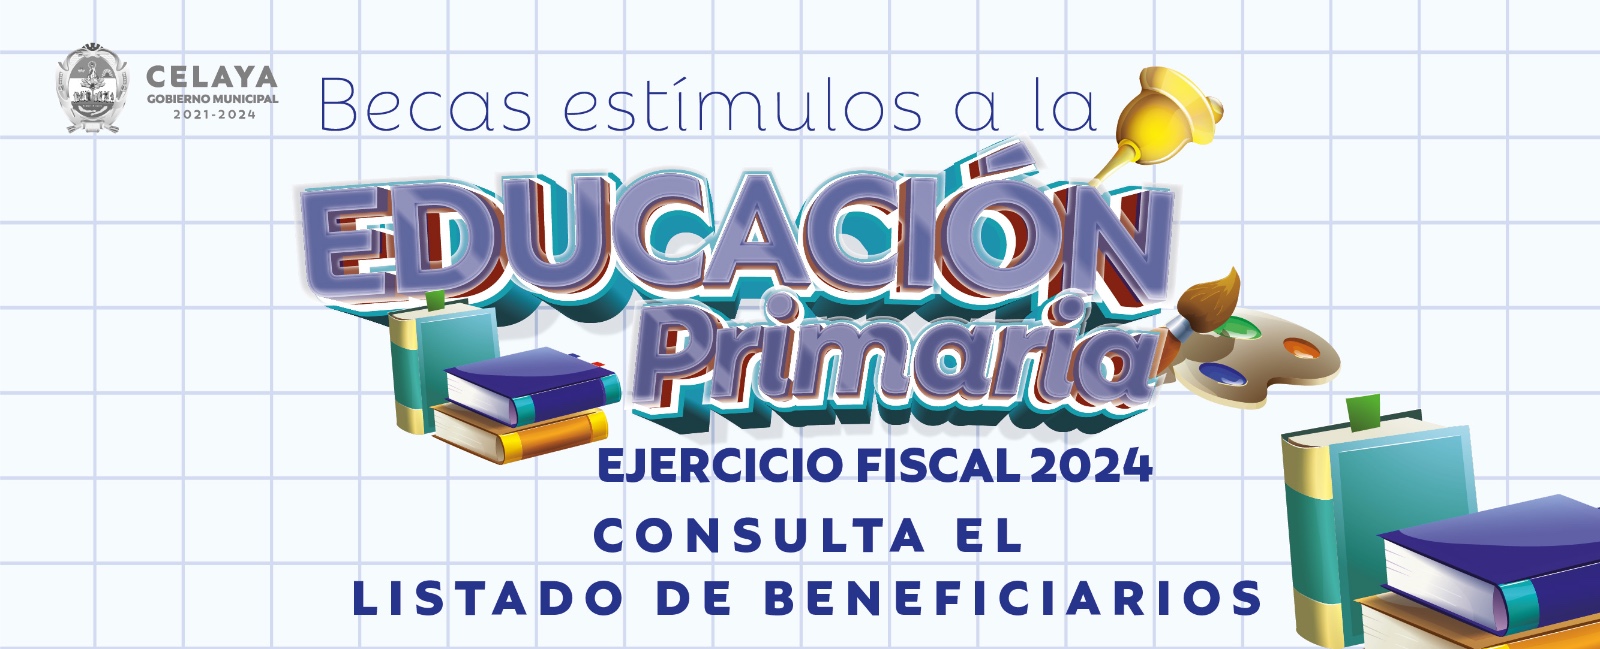 Becas estímulos a la Educación Primaria 2024: listado de beneficiarios